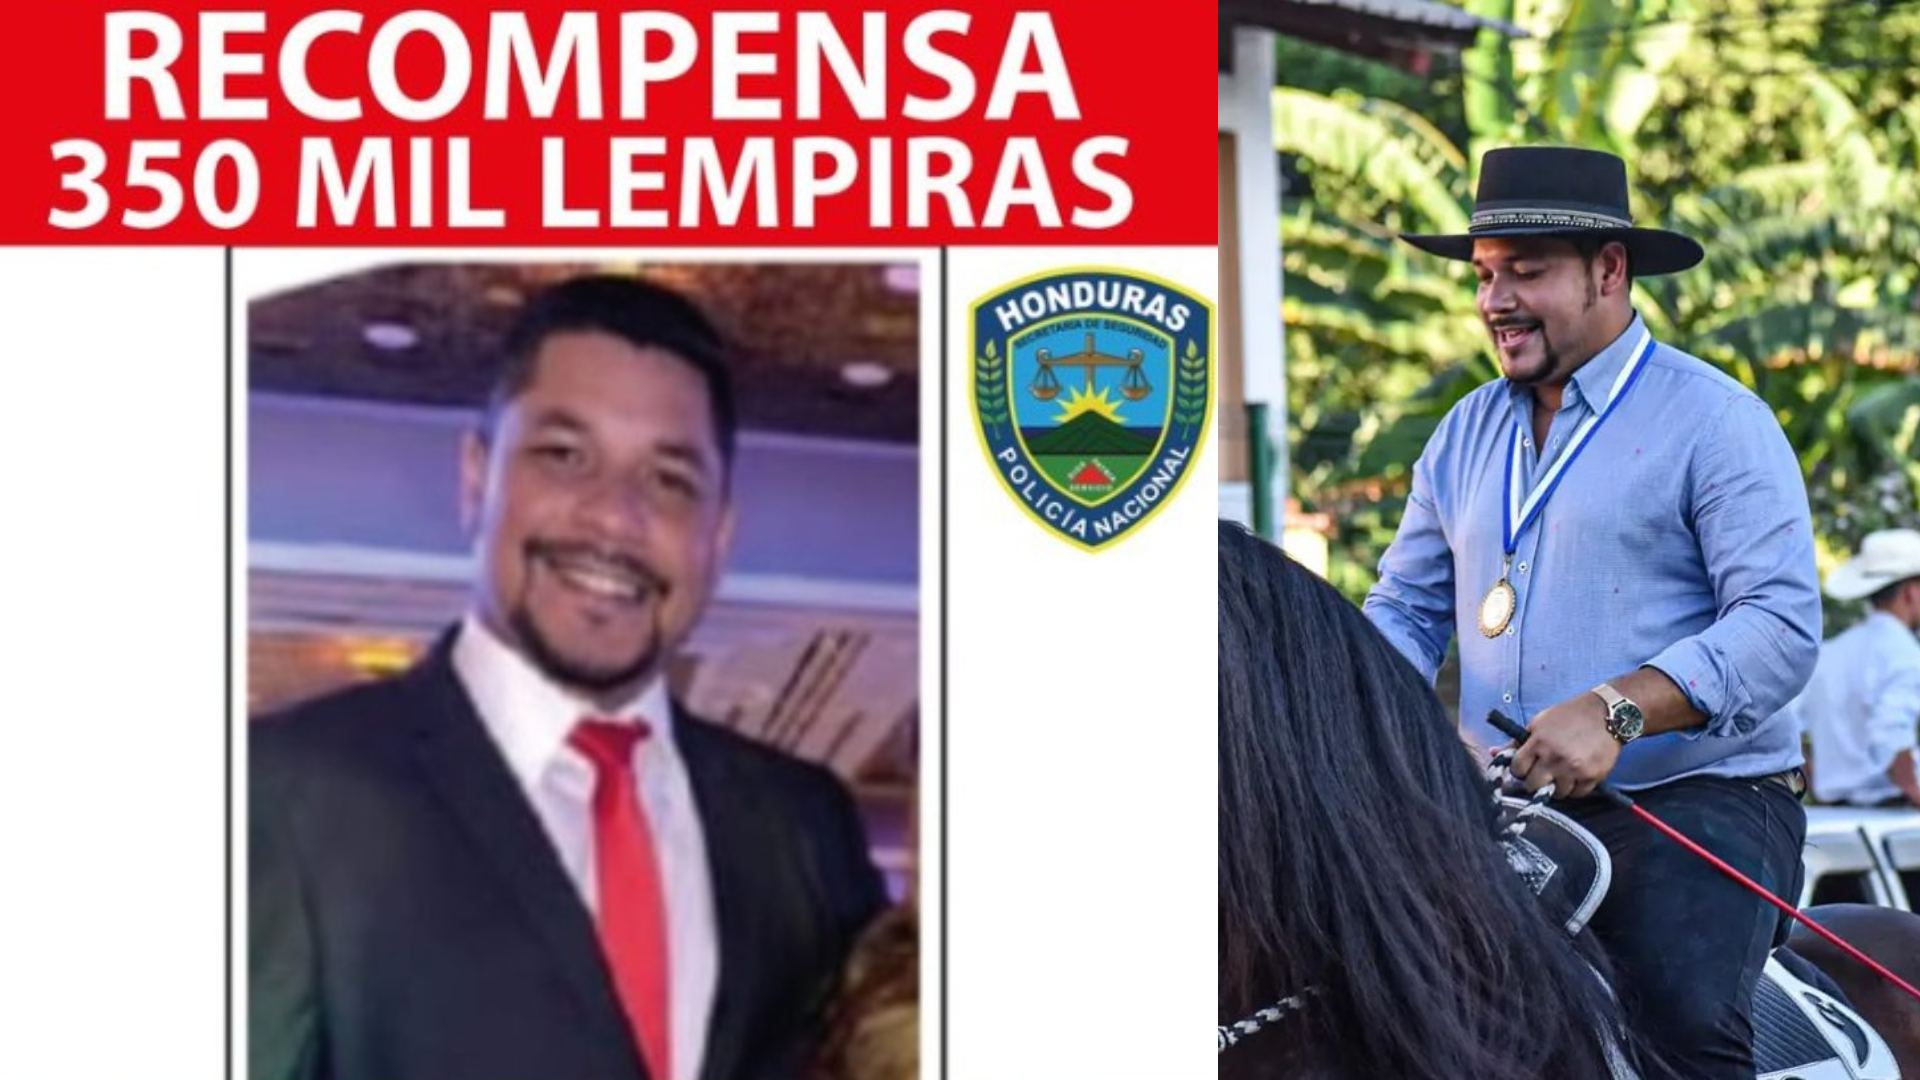 L 350 mil de recompensa para quien diga dónde está el Alcalde hondureño ¿Cómo se puede dar información?